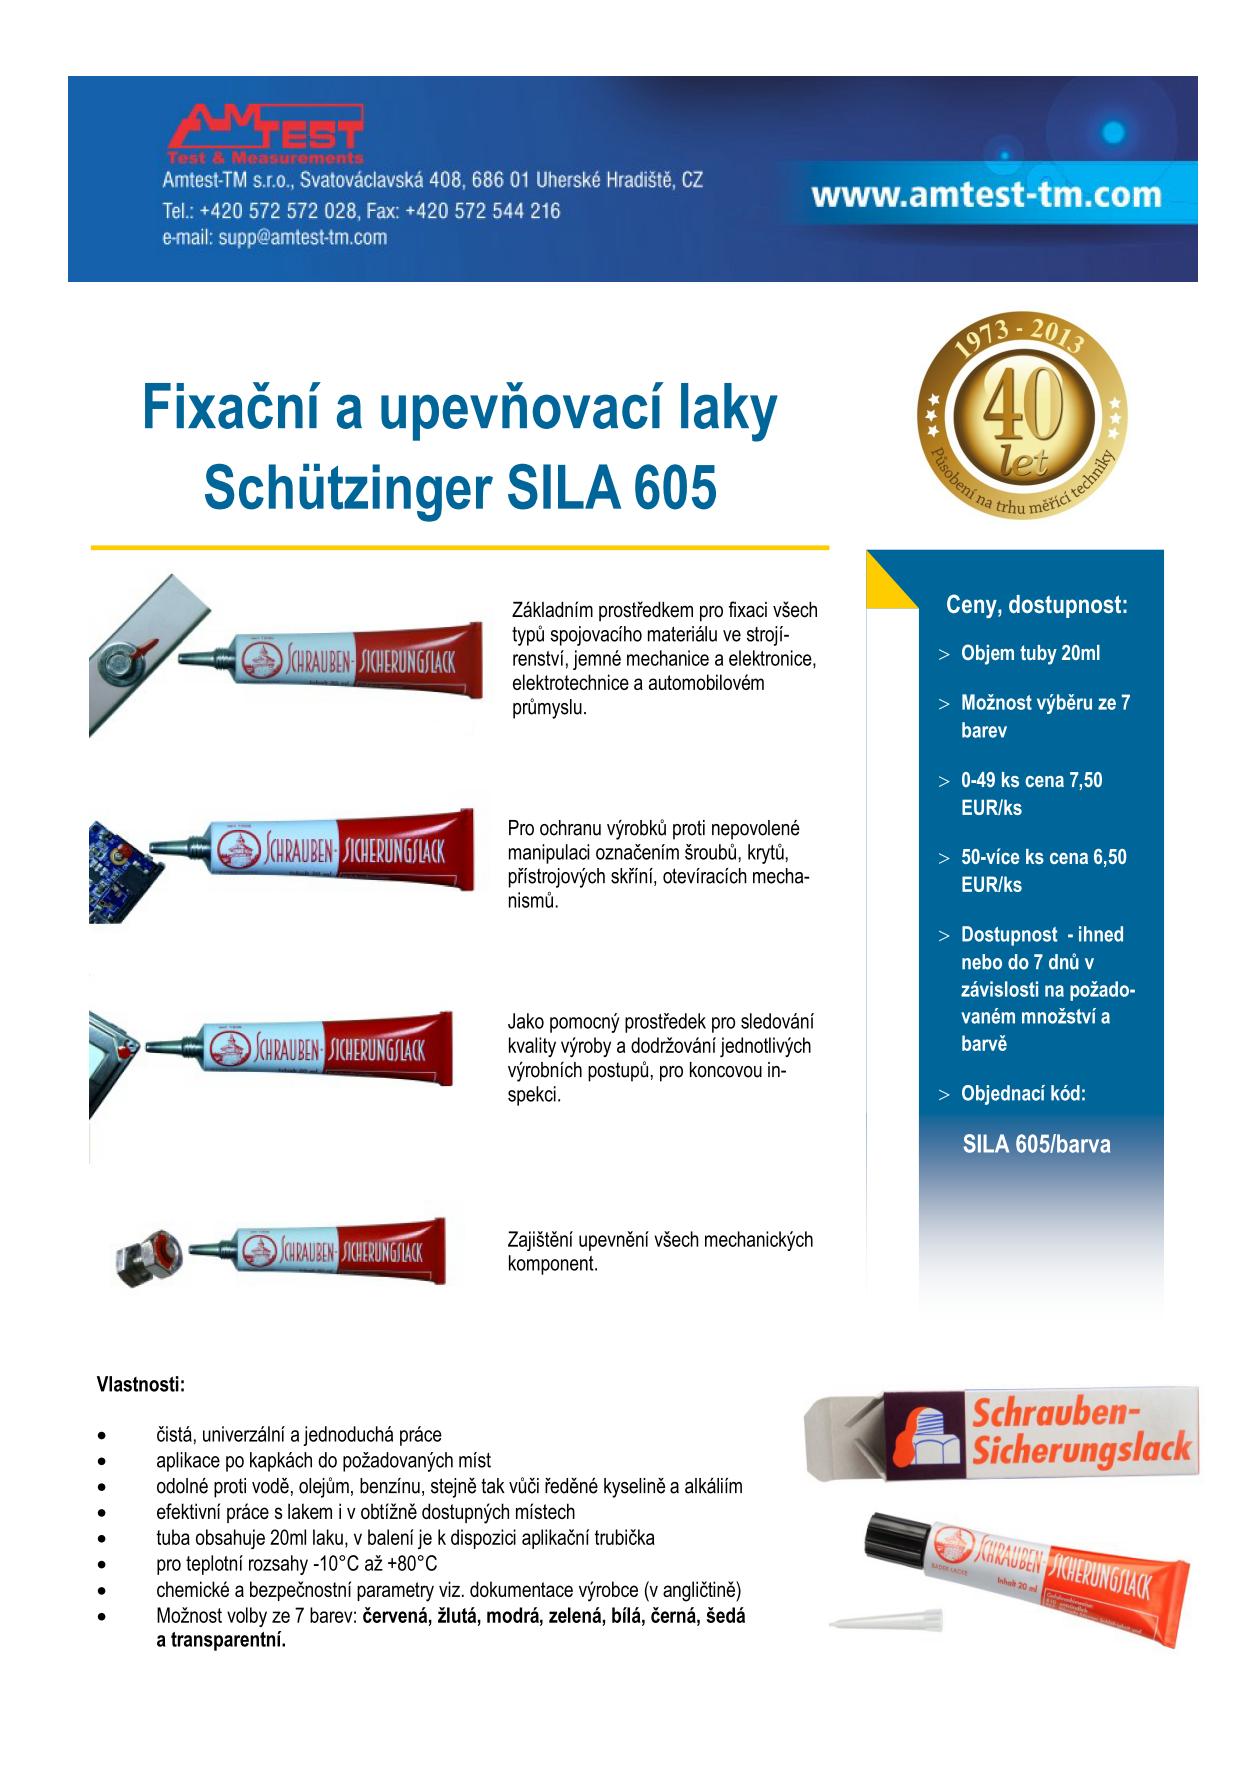 Fixační laky SILA 605